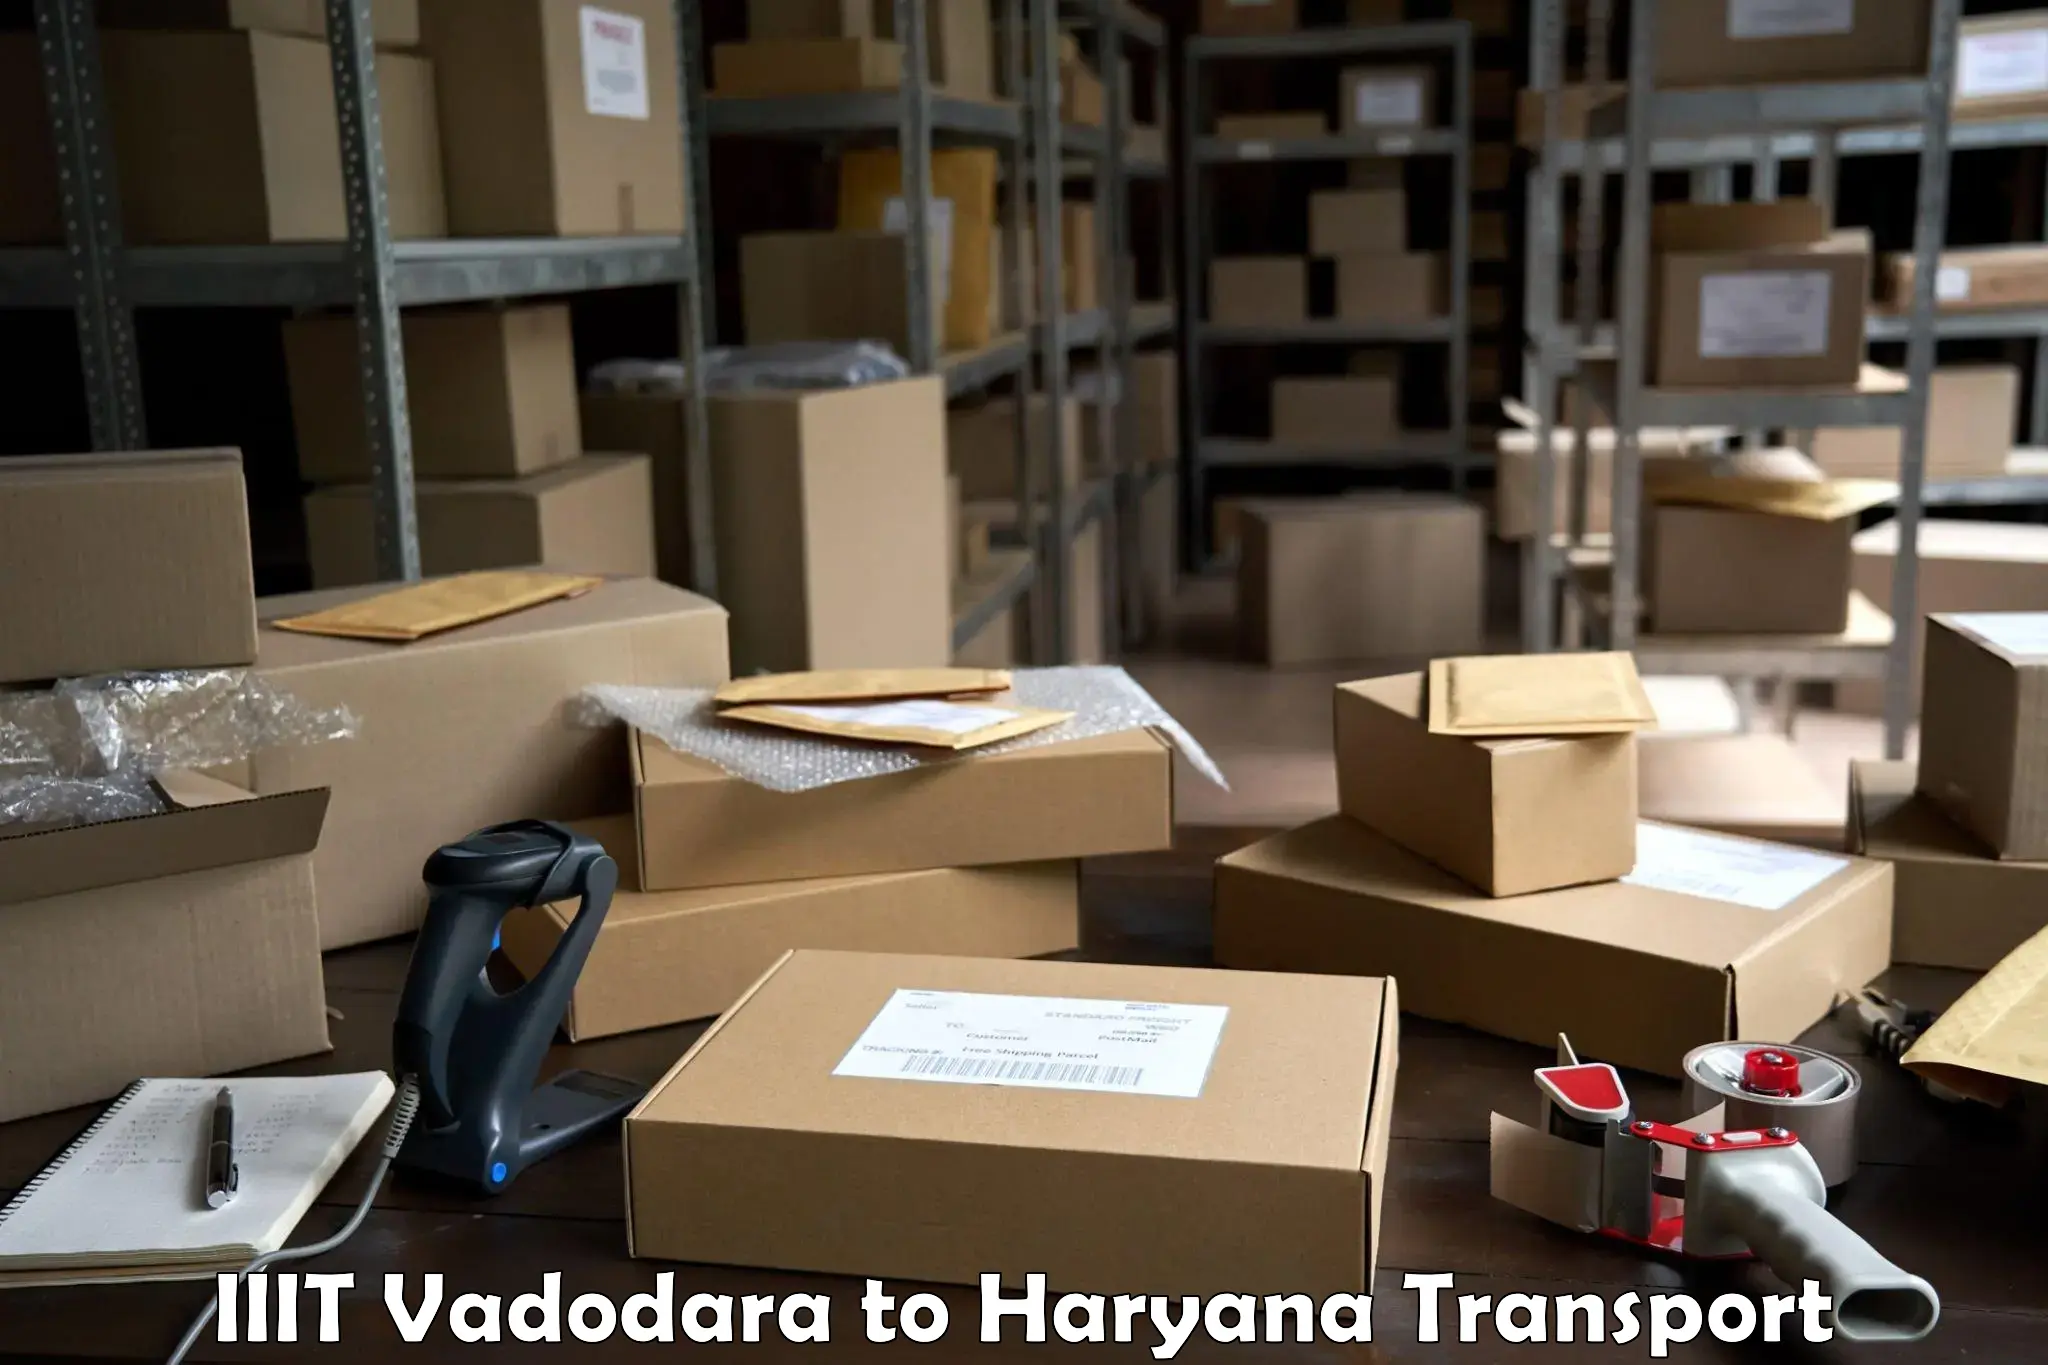 Furniture transport service IIIT Vadodara to Dharuhera